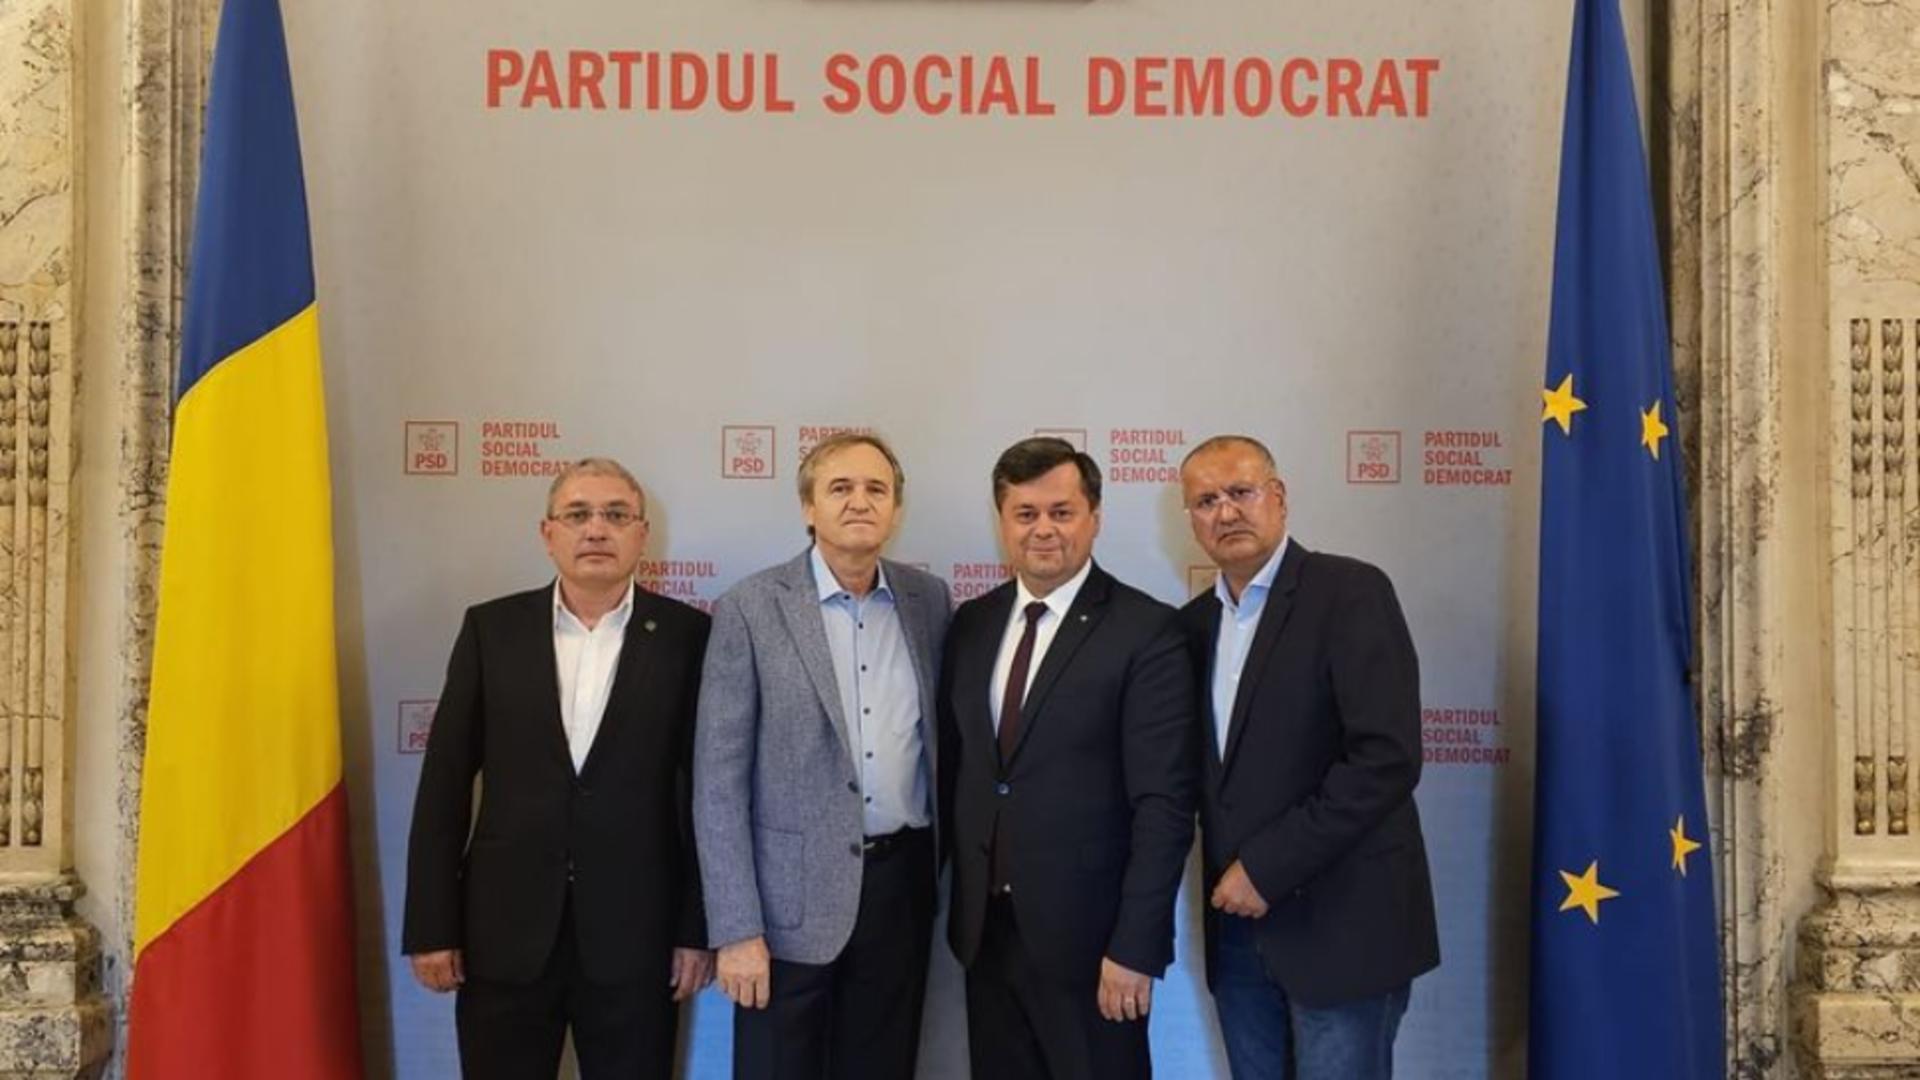 Încă un liberal trece în tabăra social democrată. Primarul municipiului Târgu Jiu, Marcel Romanescu, a devenit membru PSD